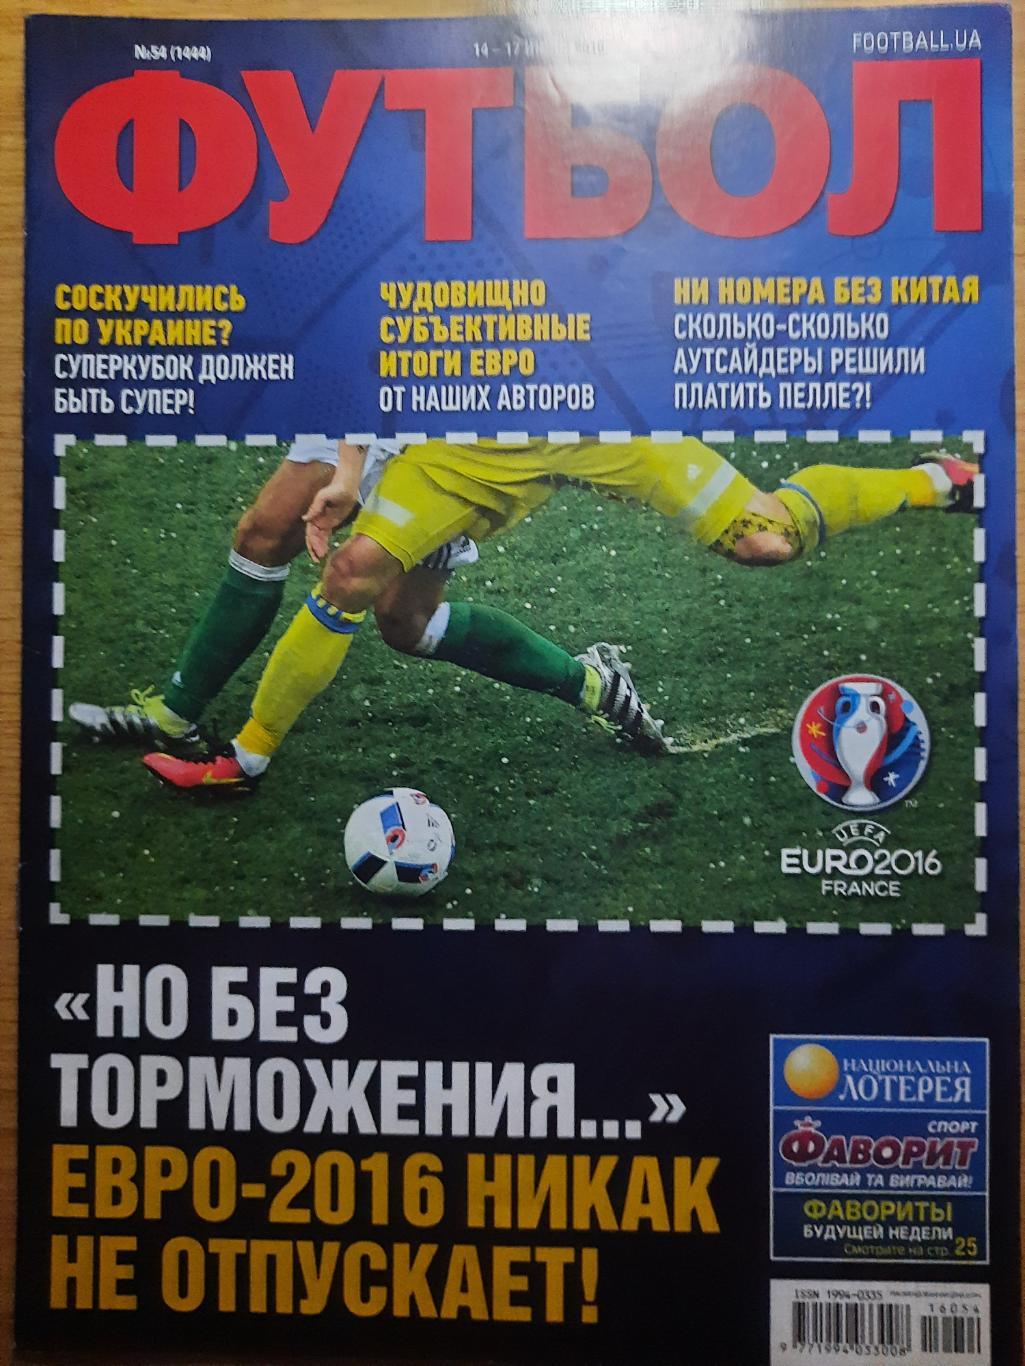 еженедельник Футбол #54 2016, ЕВРО-2016 итоги, Еврокубки представление...